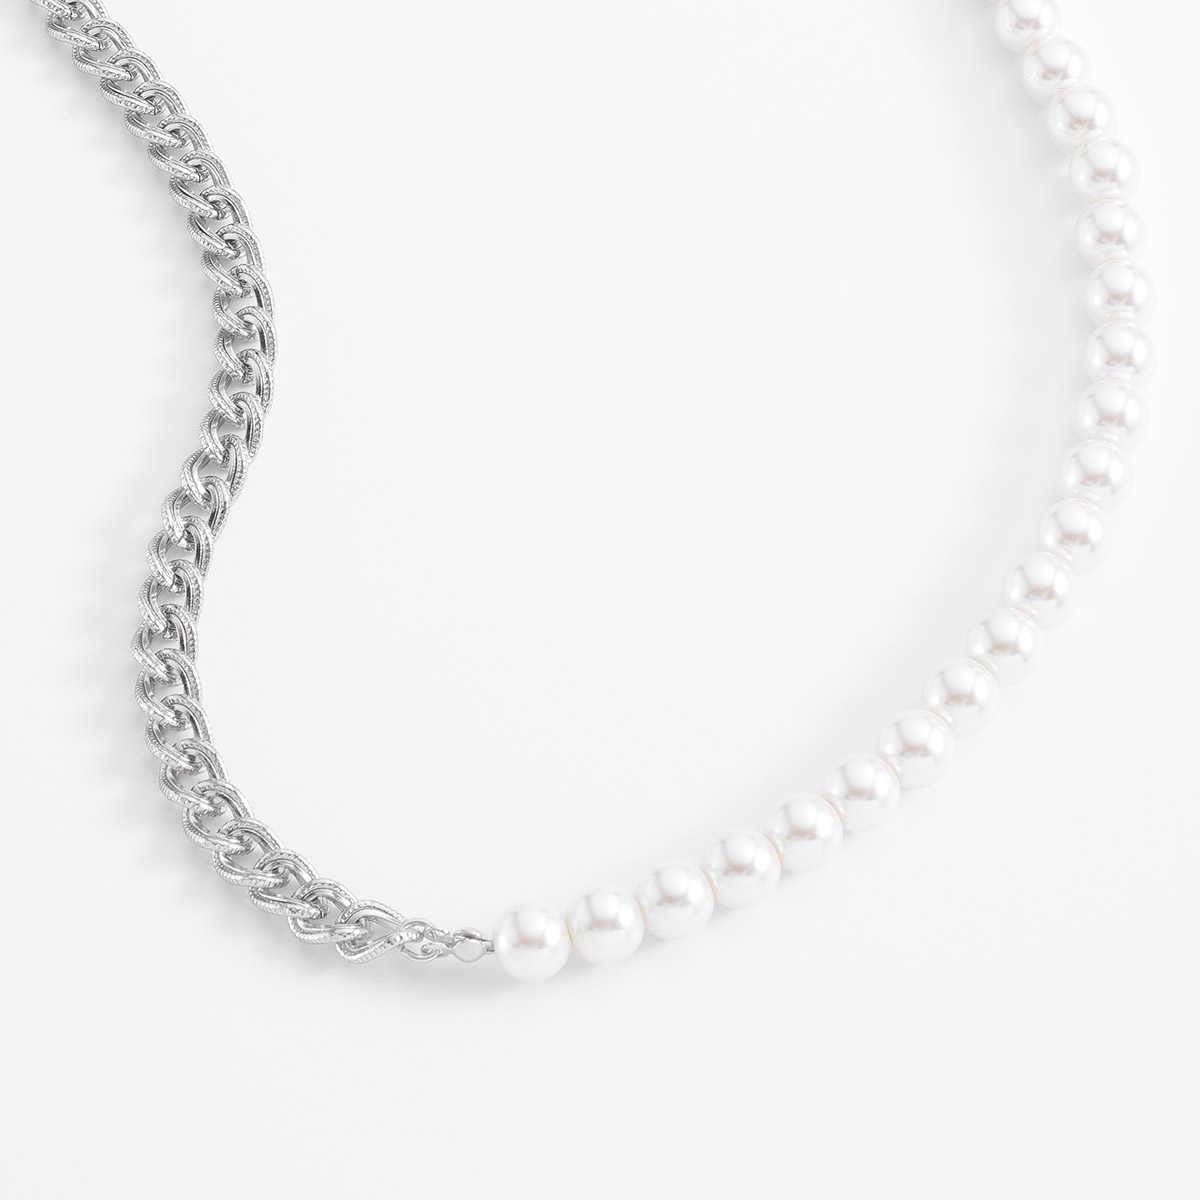 Cautivador collar de eslabones entrelazados en baño de platino, combinando en perfecta simetría con perlas en tono crema.
-        Collar
-        50 cm
-        Baño de Platino
-        Perlas en tono crema
